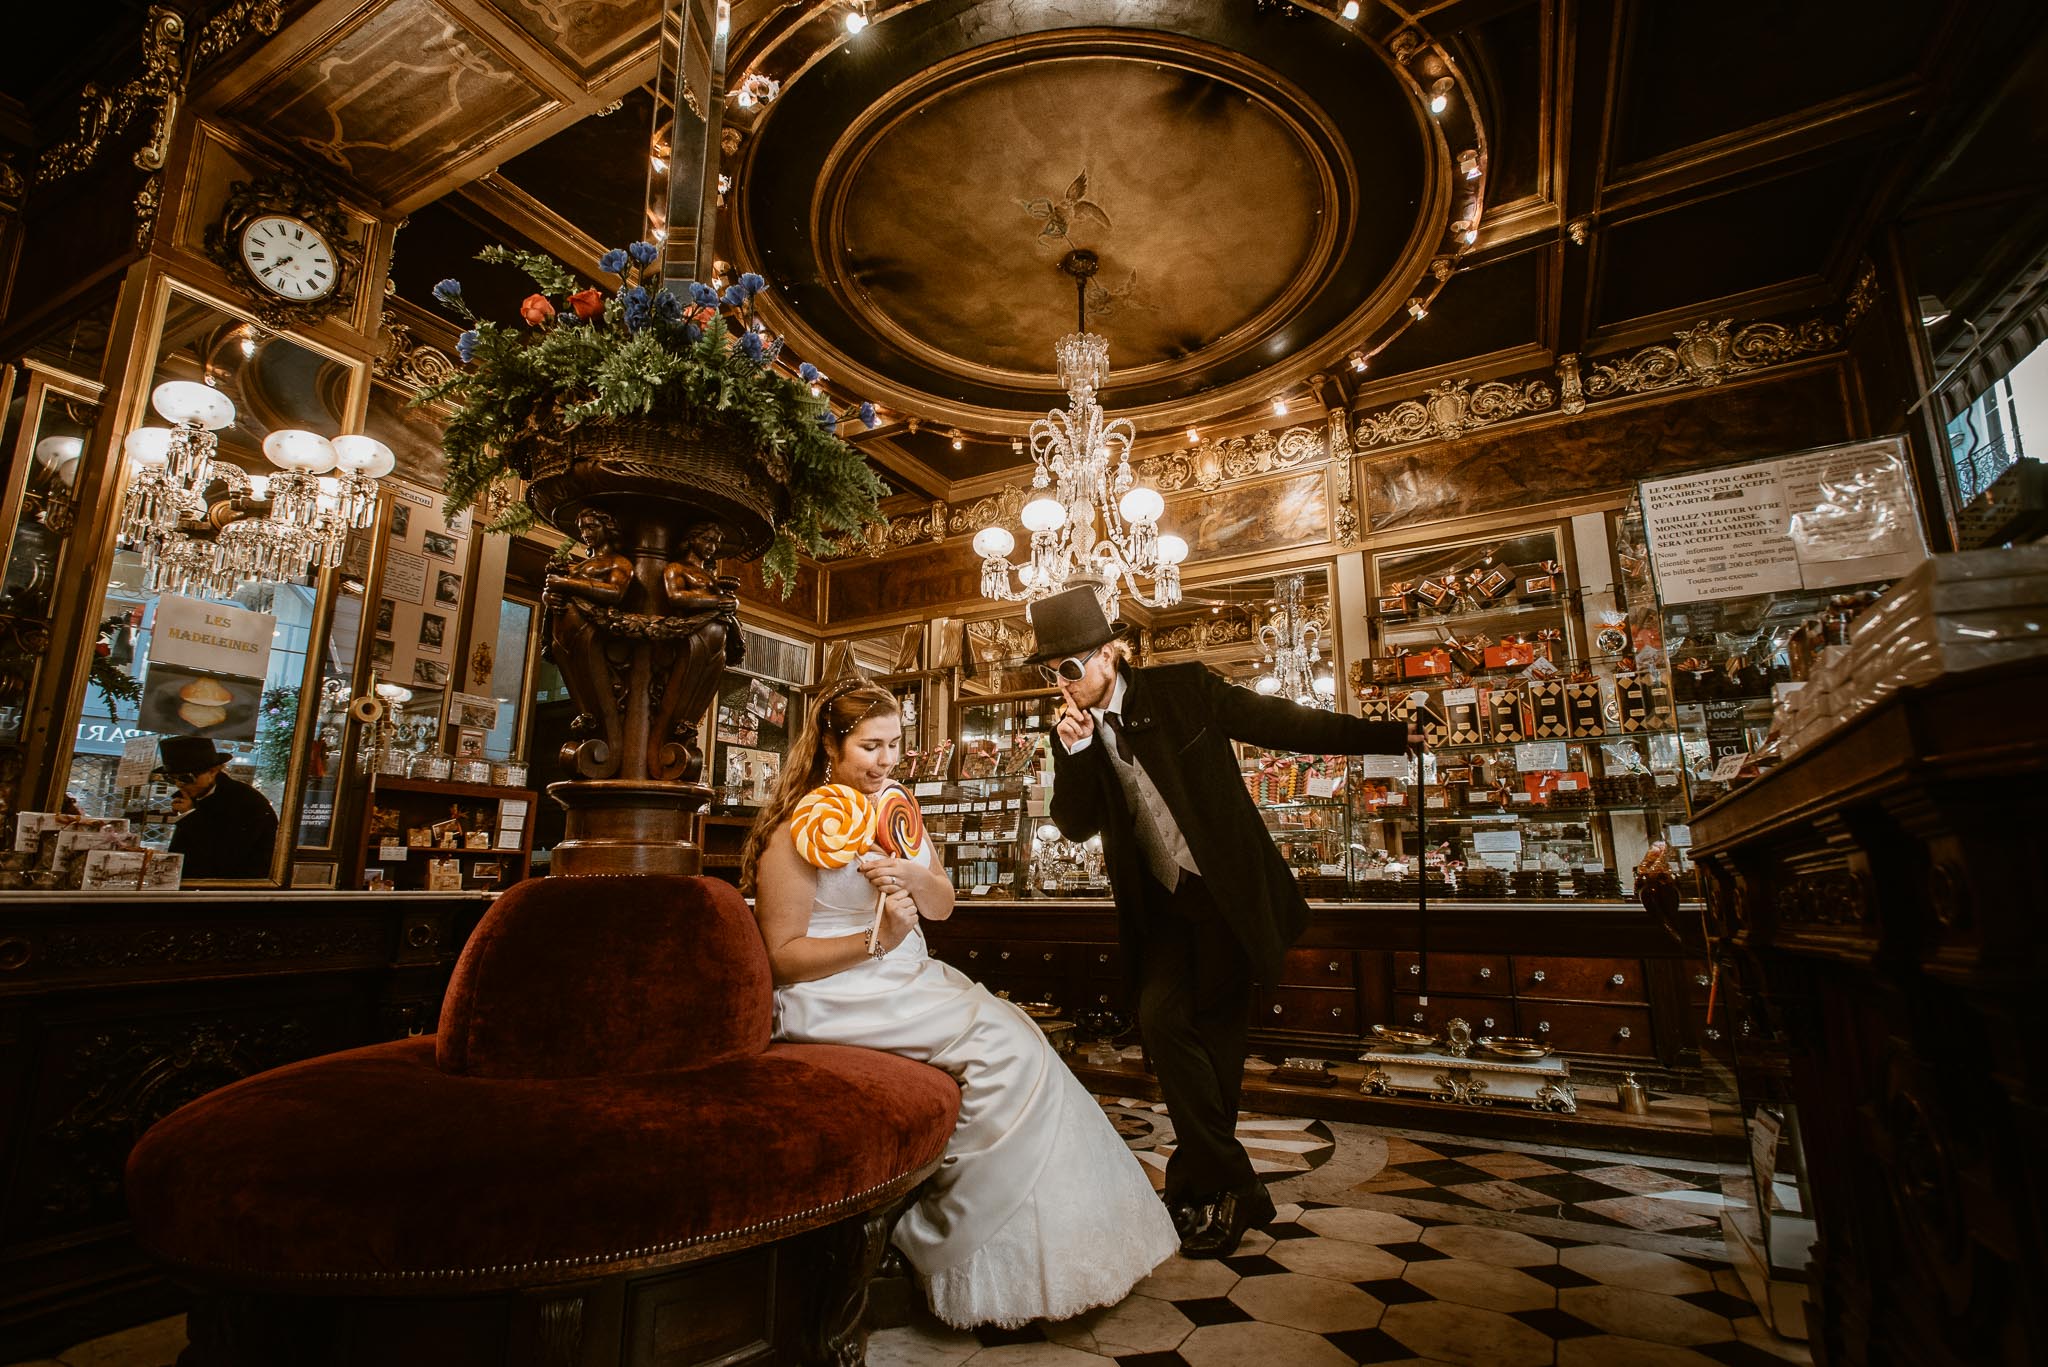 Séance couple après mariage inspirée de Charlie et la Chocolaterie de Tim Burton chez Debotté à Nantes par Geoffrey Arnoldy photographe